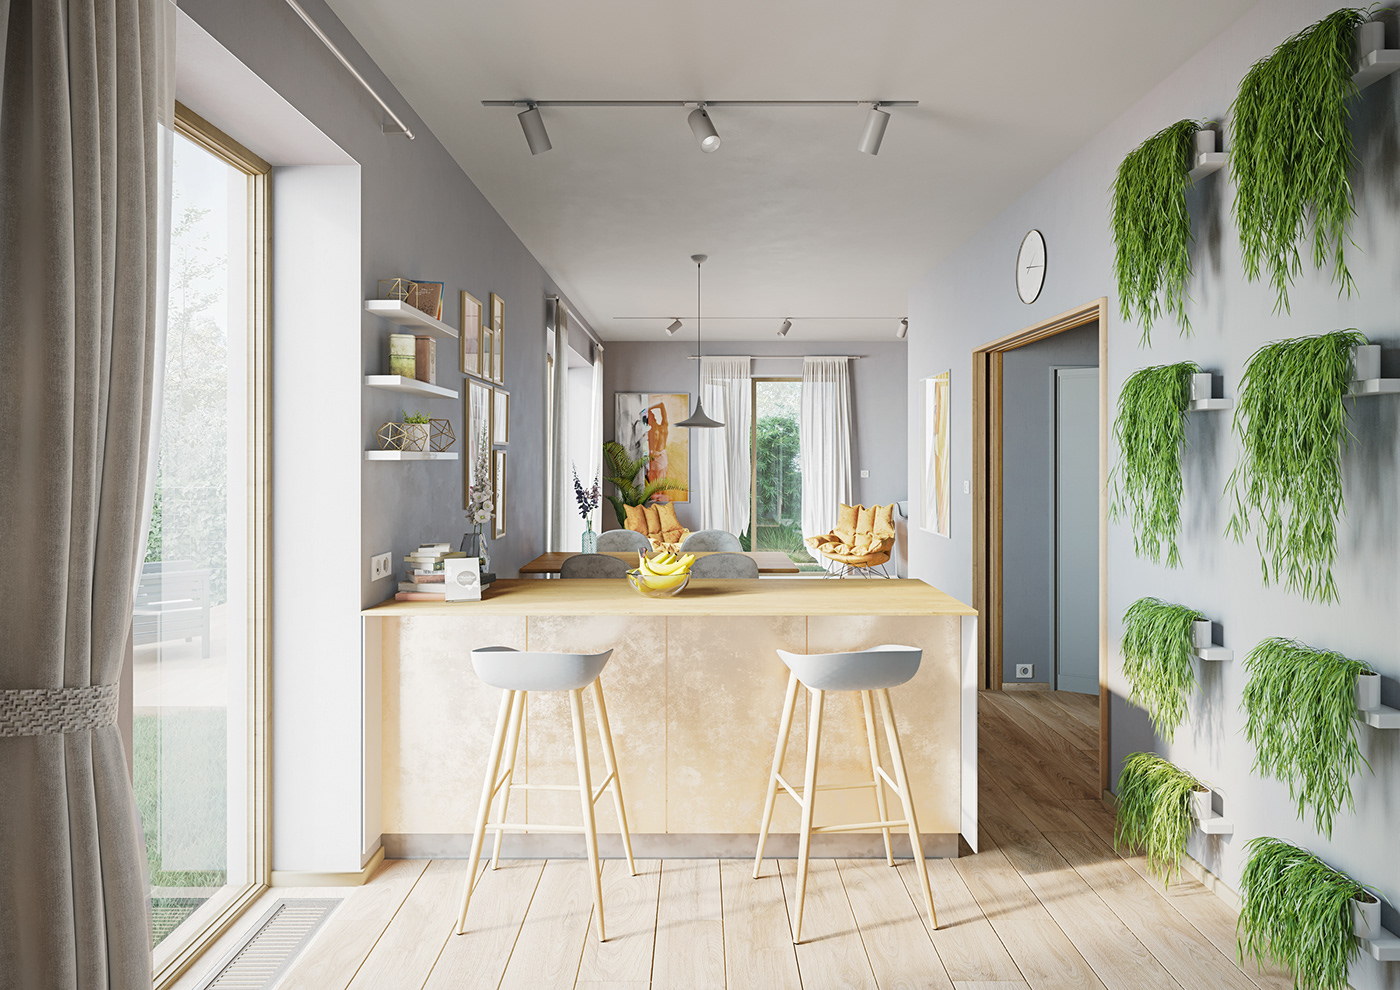 2DR studio architecture archviz CGI furniture Interior kitchen lights Render visualization